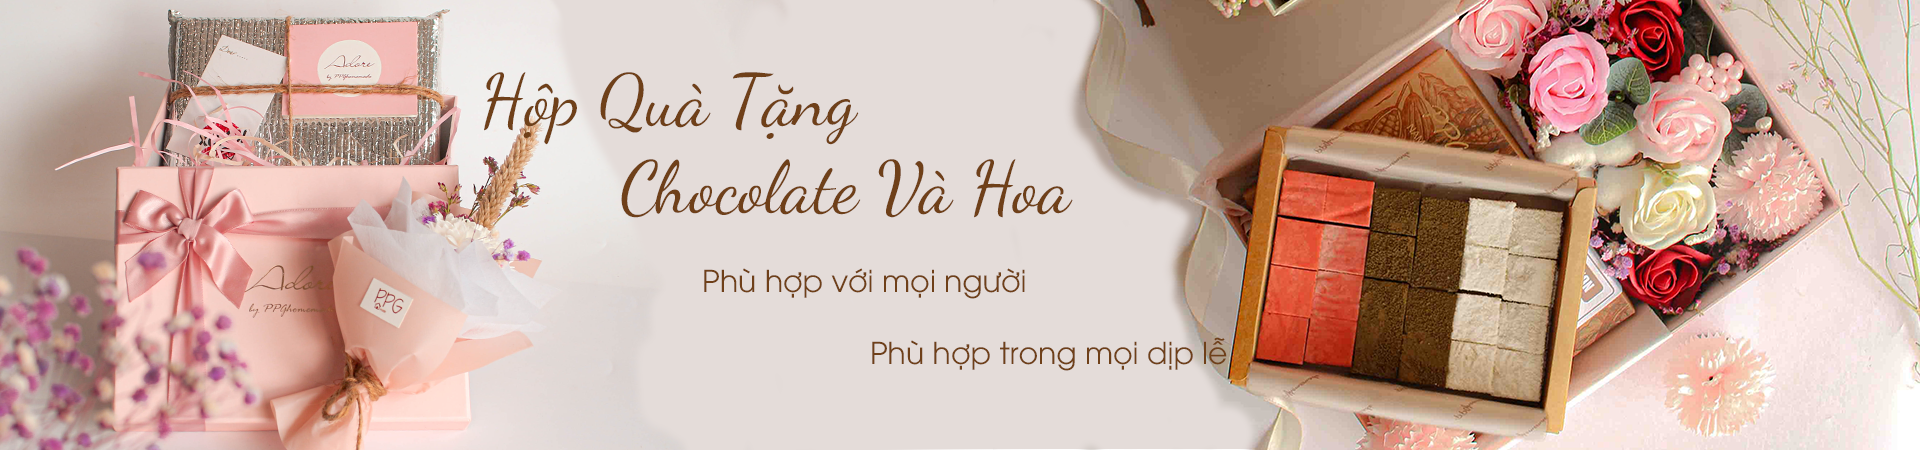 Bộ Sưu Tập Hộp Quà | Chocolate & Hoa | Quà Tặng Ý Nghĩa